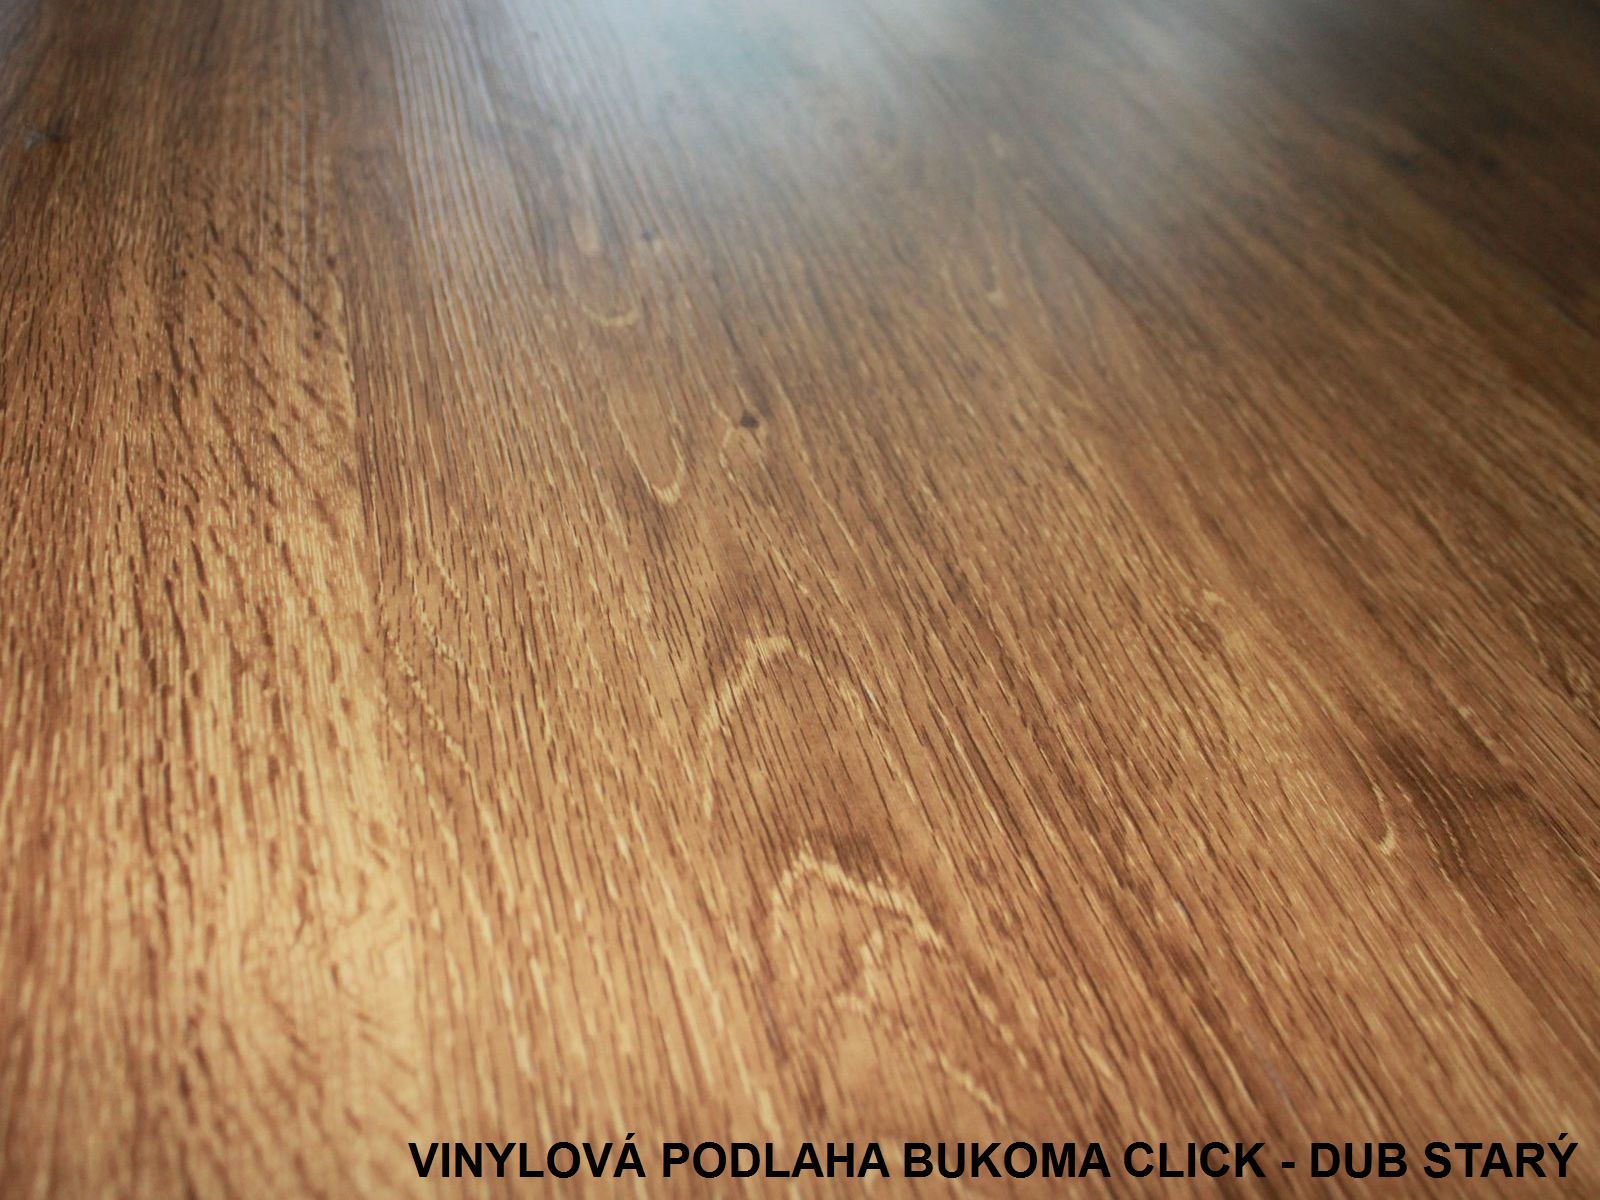 Vinylové podlahy představují dokonalý podlahový materiál